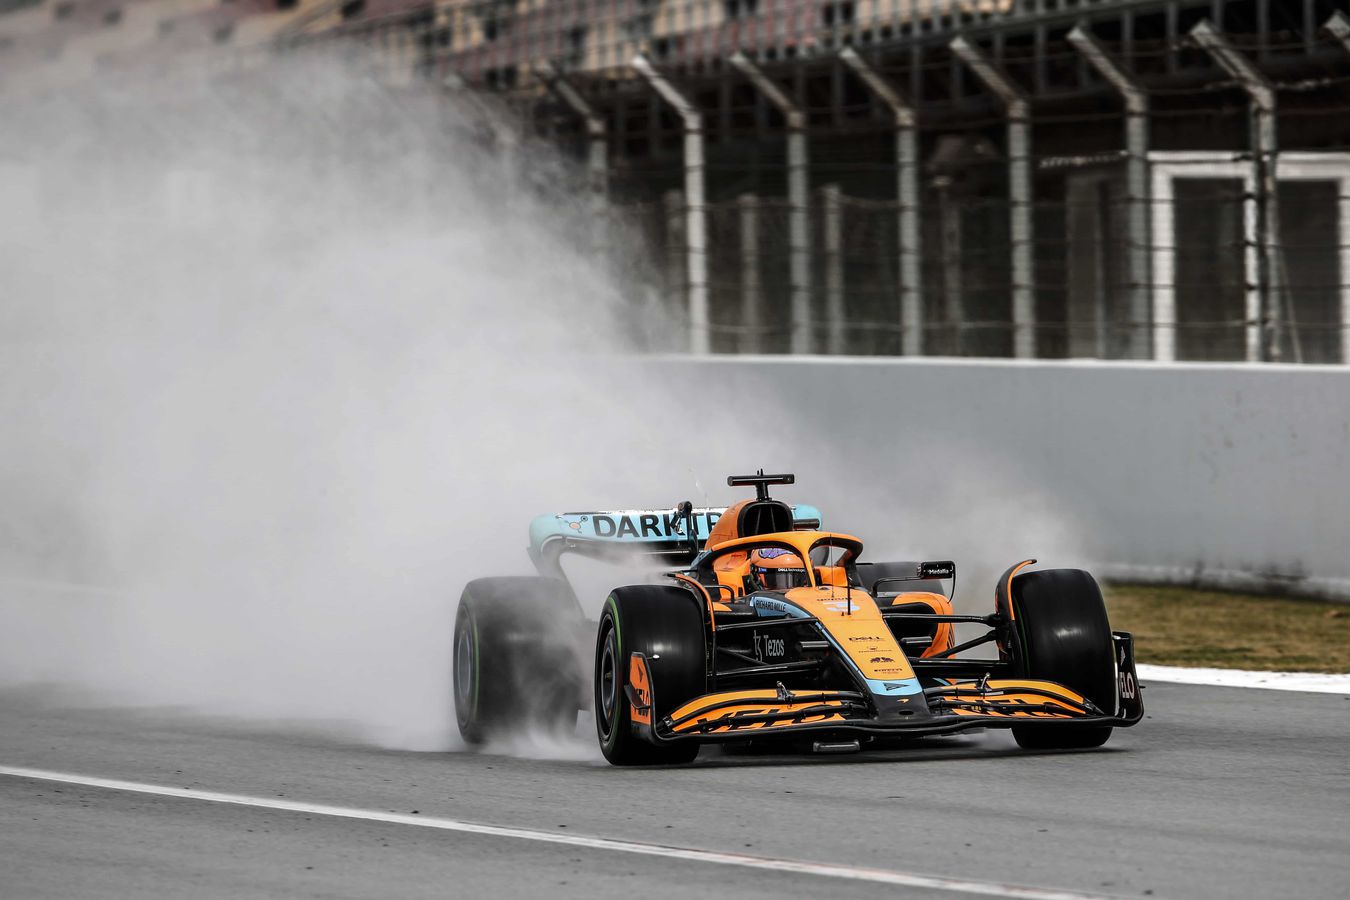 McLaren f1